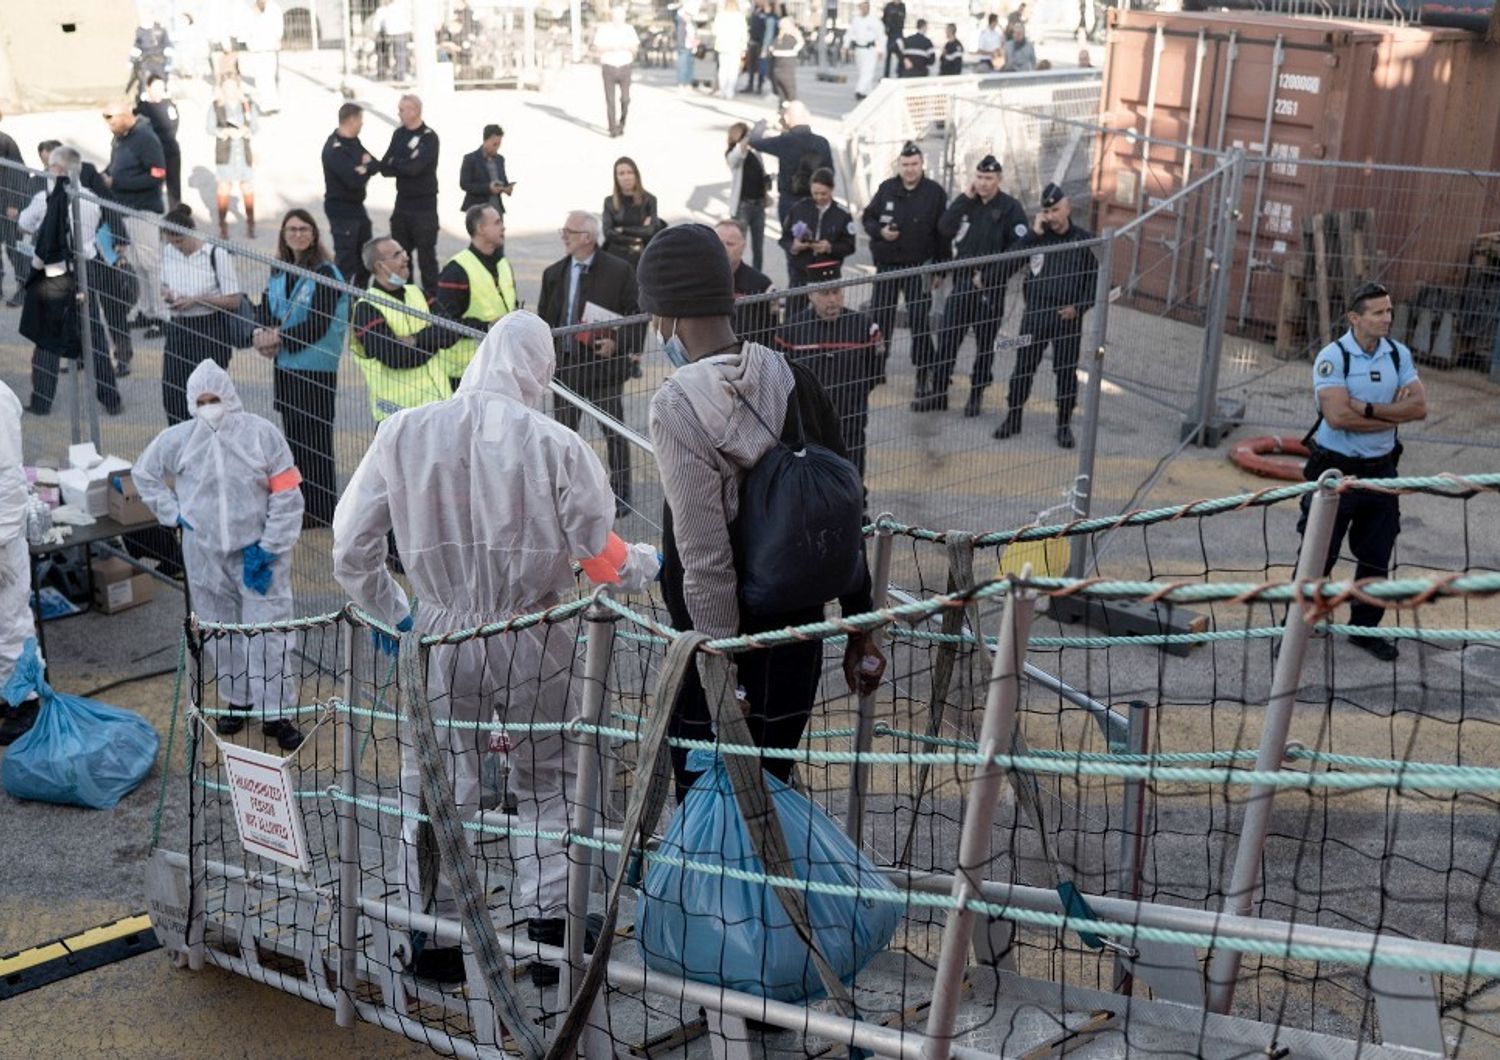 francia ultimatum Italia migranti non chiudere porti